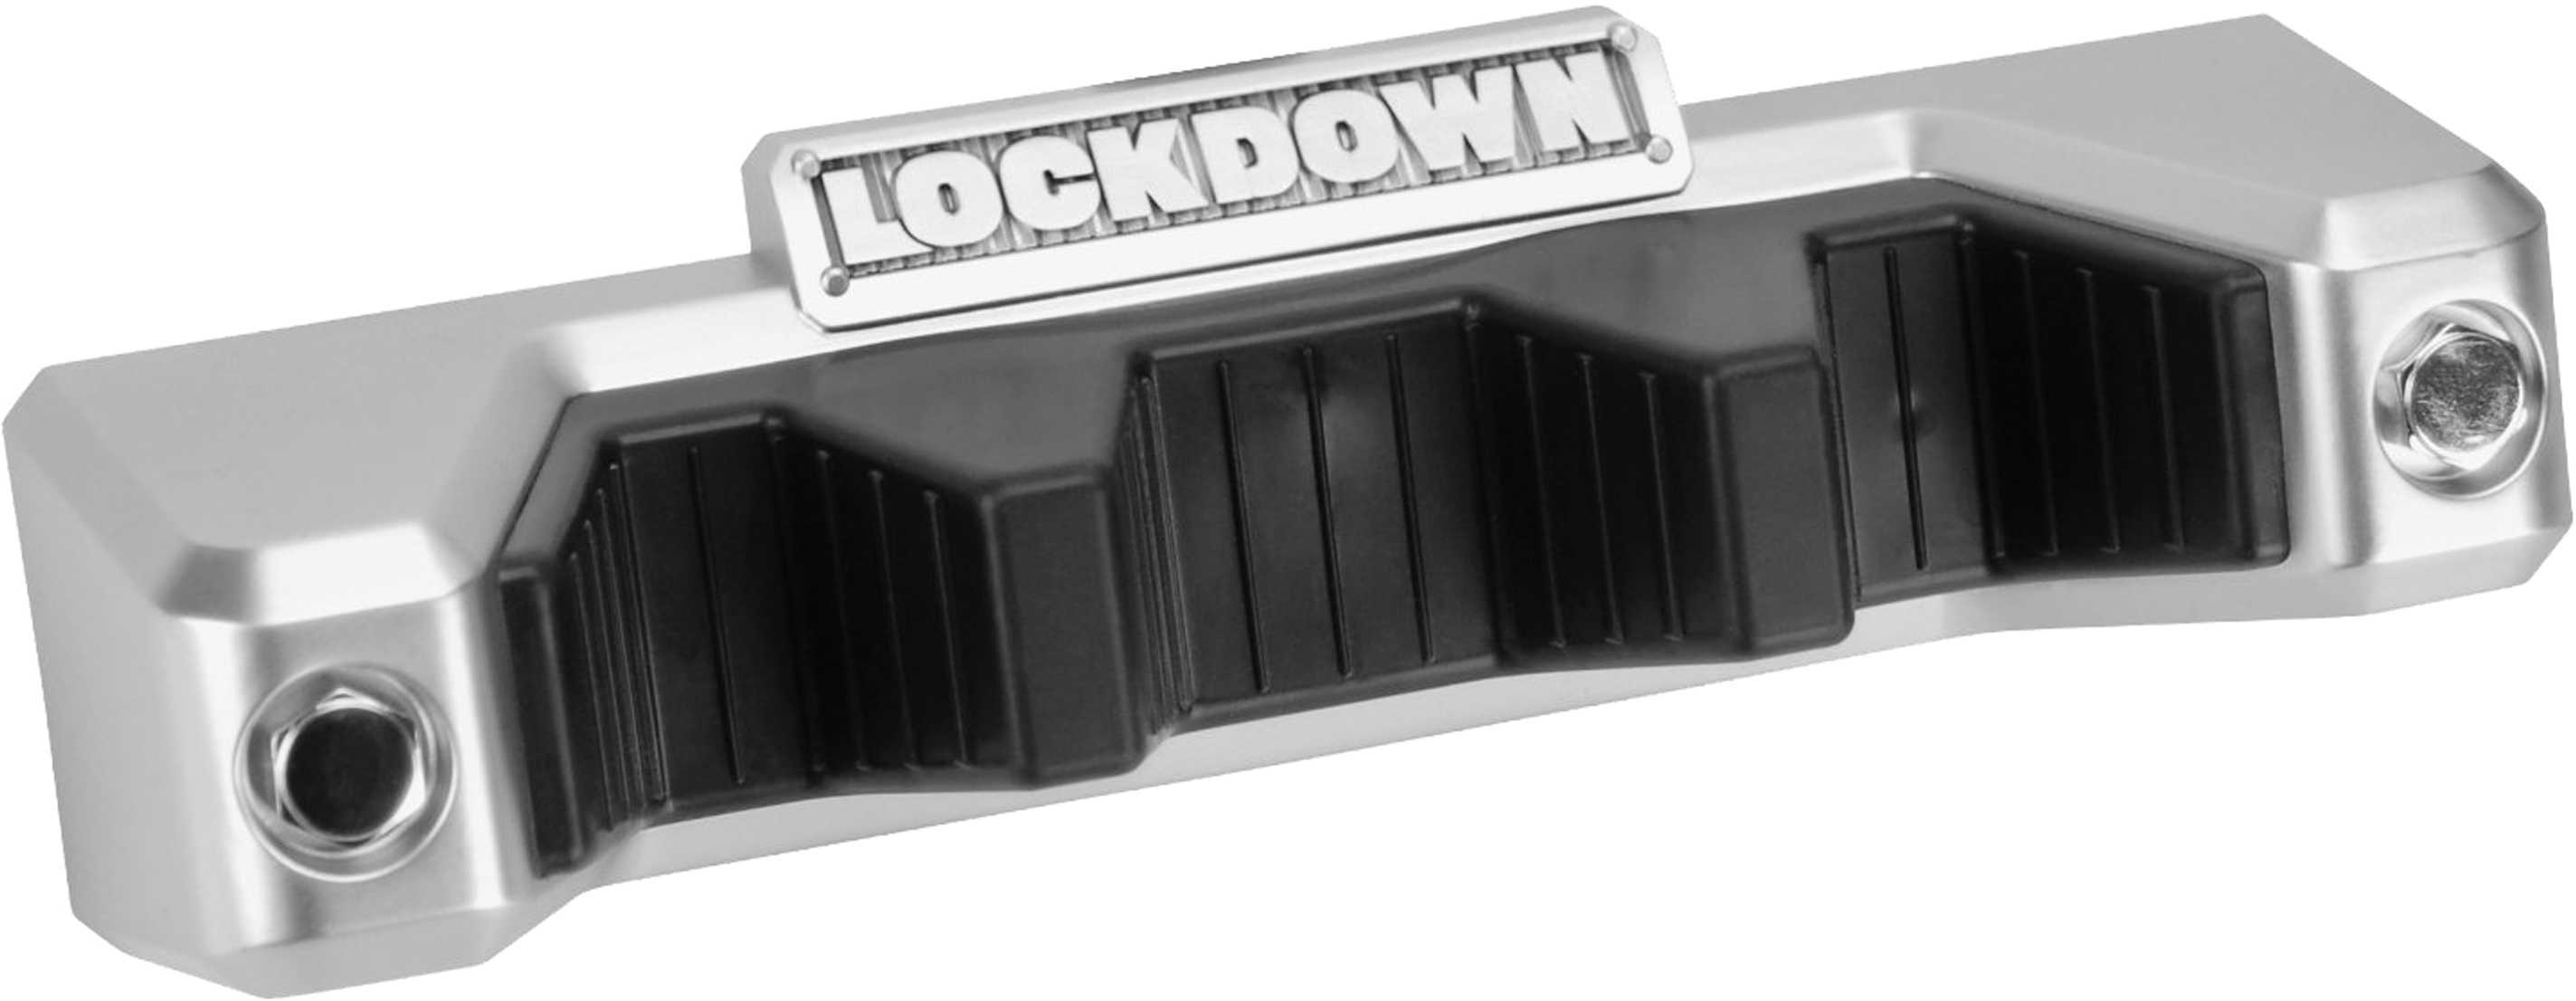 Lockdown 222177 Magnetic Barrel Rest